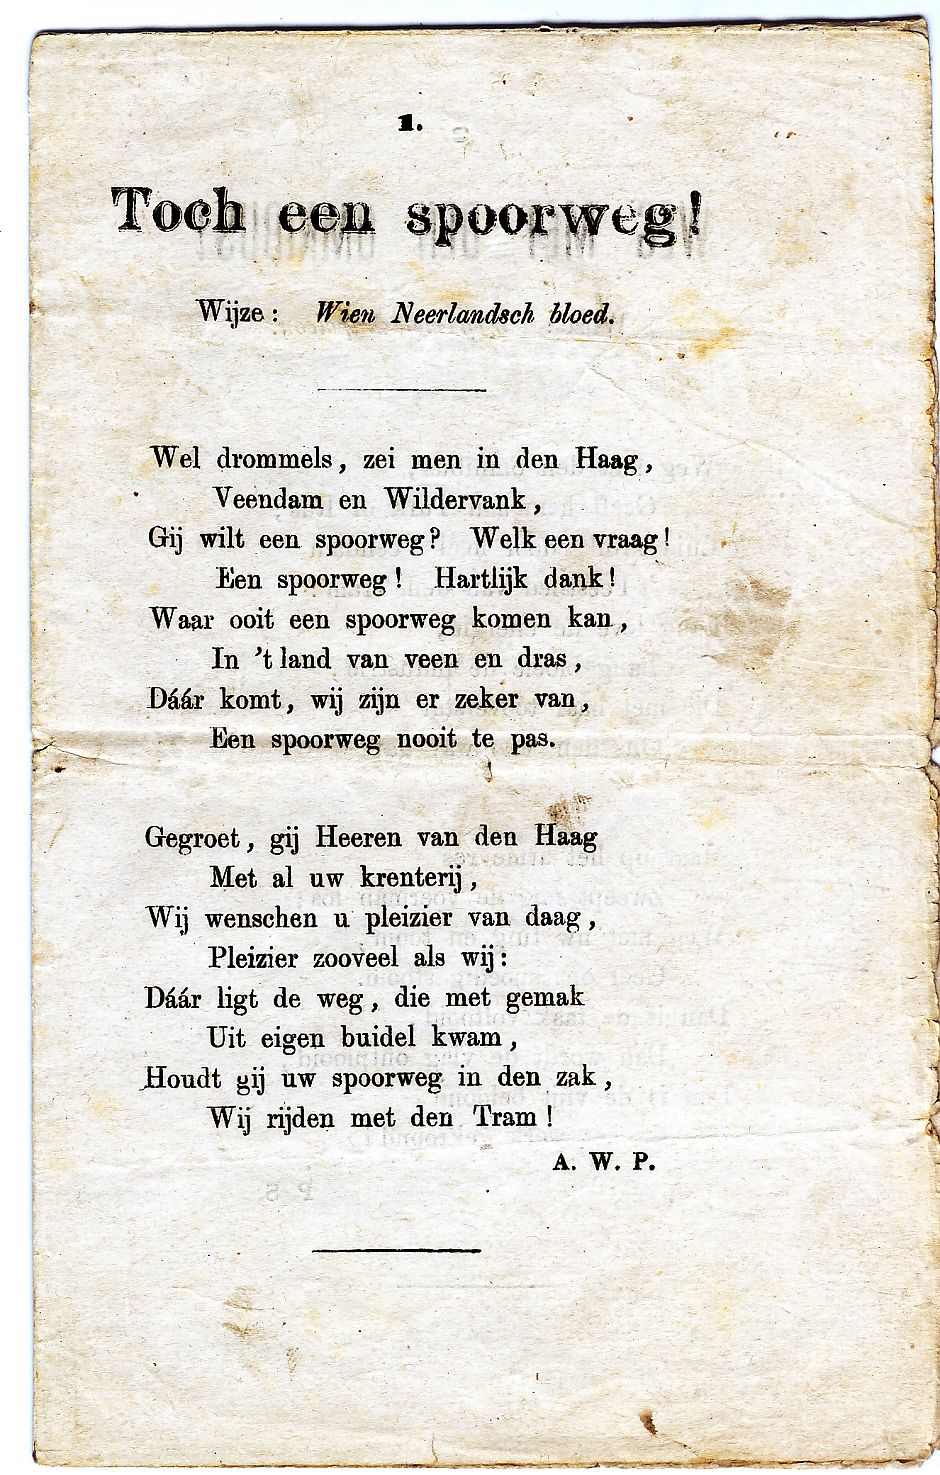 <p>Feestlied geschreven door Anthony Winkler Prins bij de eerste rit van de EGTM. Collectie Veenkoloniaal Museum, Veendam.</p>
